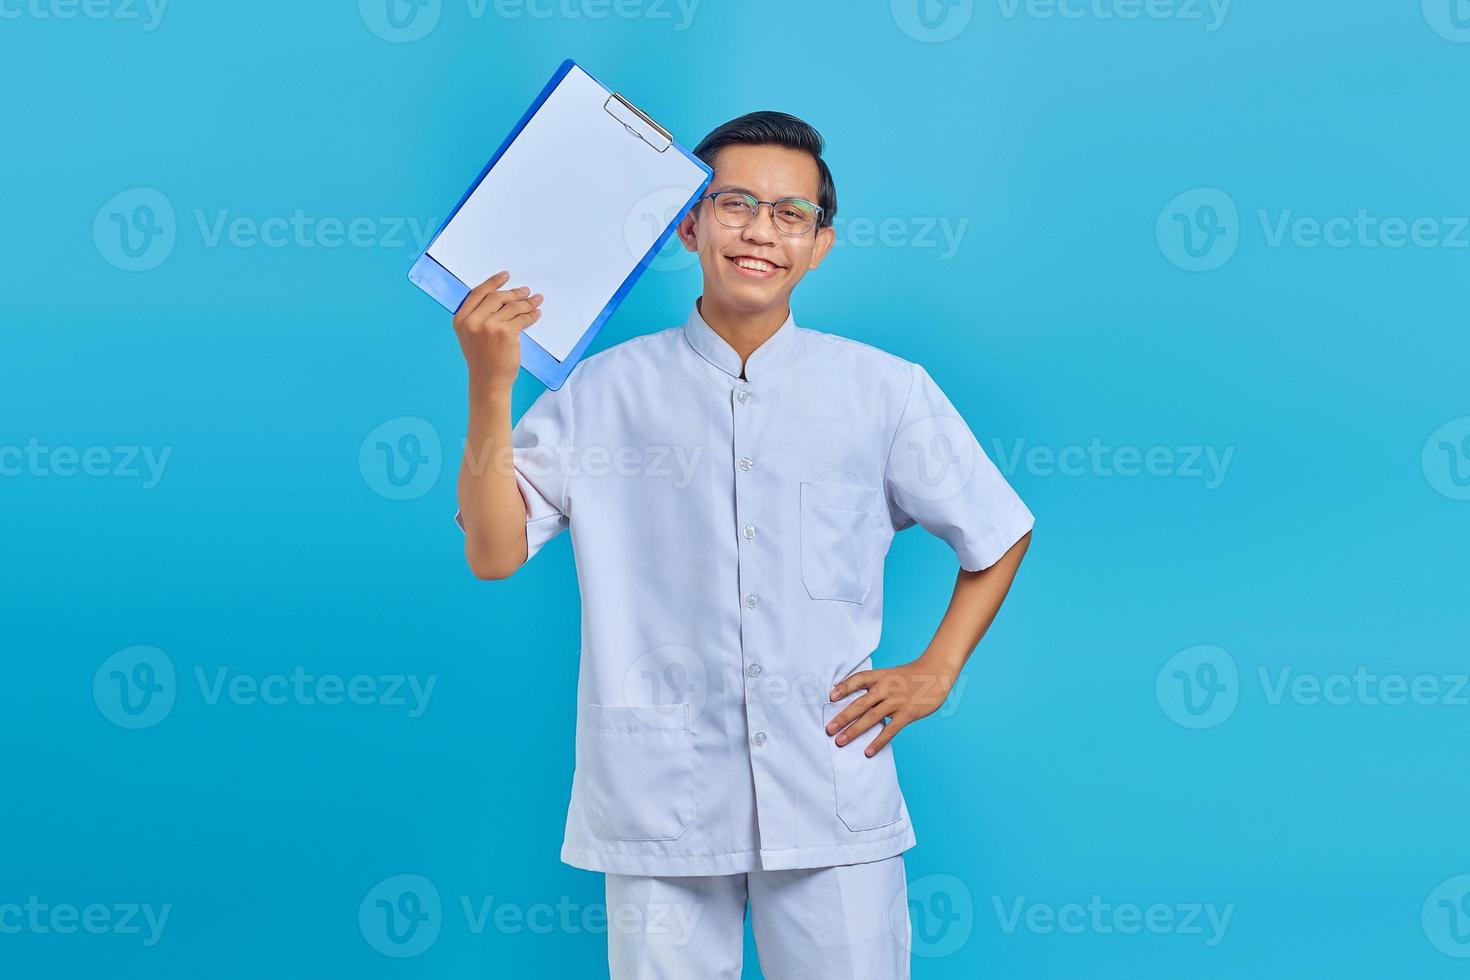 vrolijke jonge verpleger die klembord toont en camera op blauwe achtergrond bekijkt foto